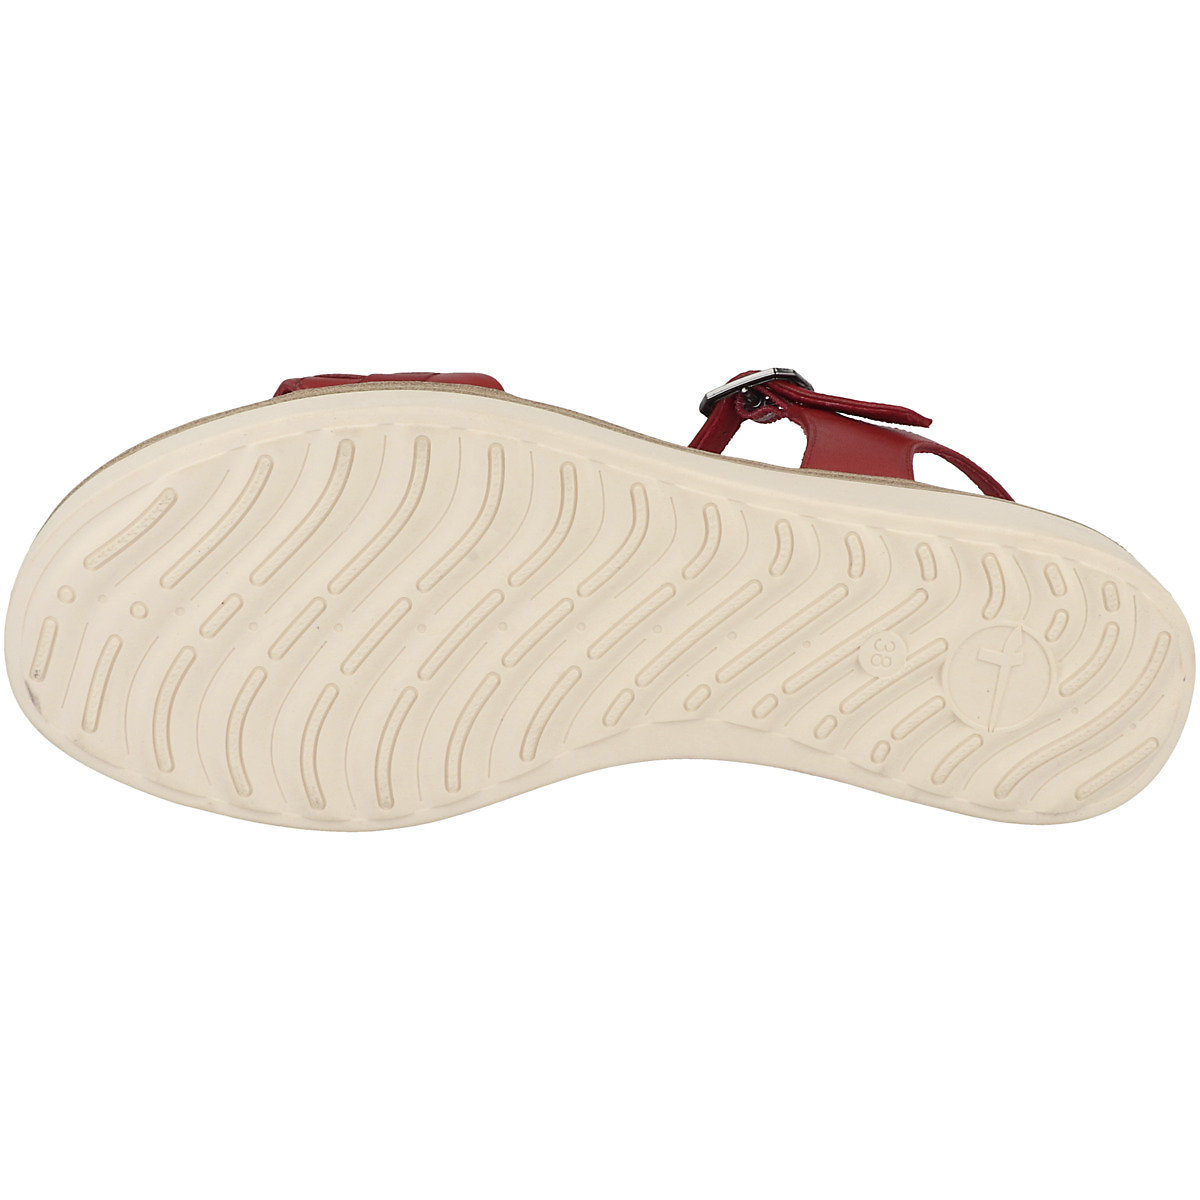 Tamaris 1-28216-20 Sandale Damen Klassische Sandalen rot